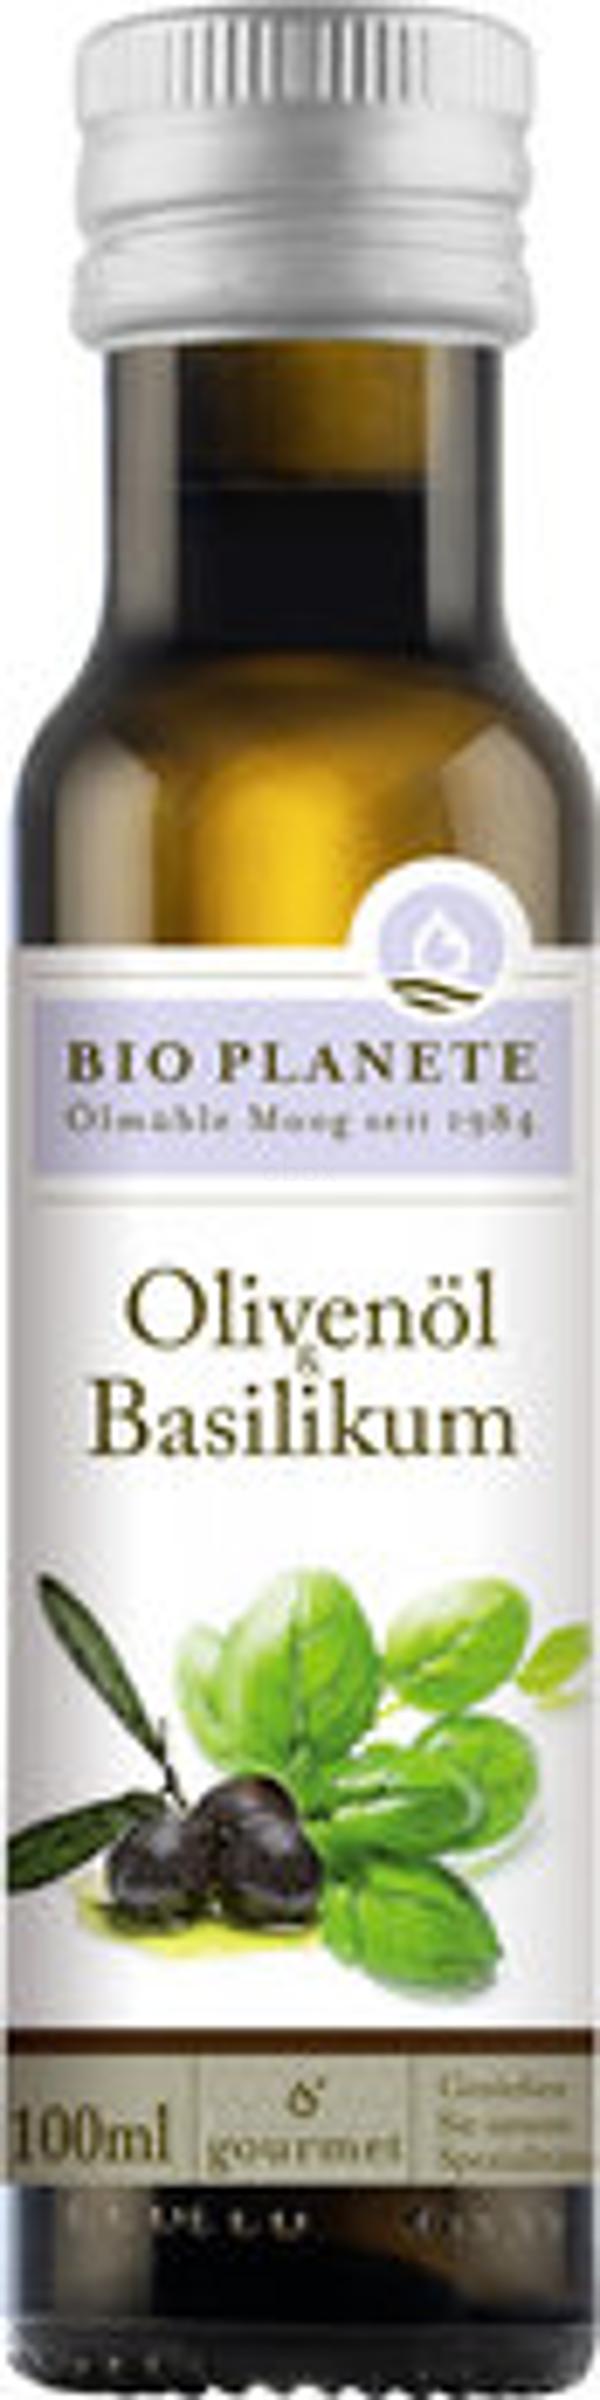 Produktfoto zu Olivenöl & Basilikum 100ml